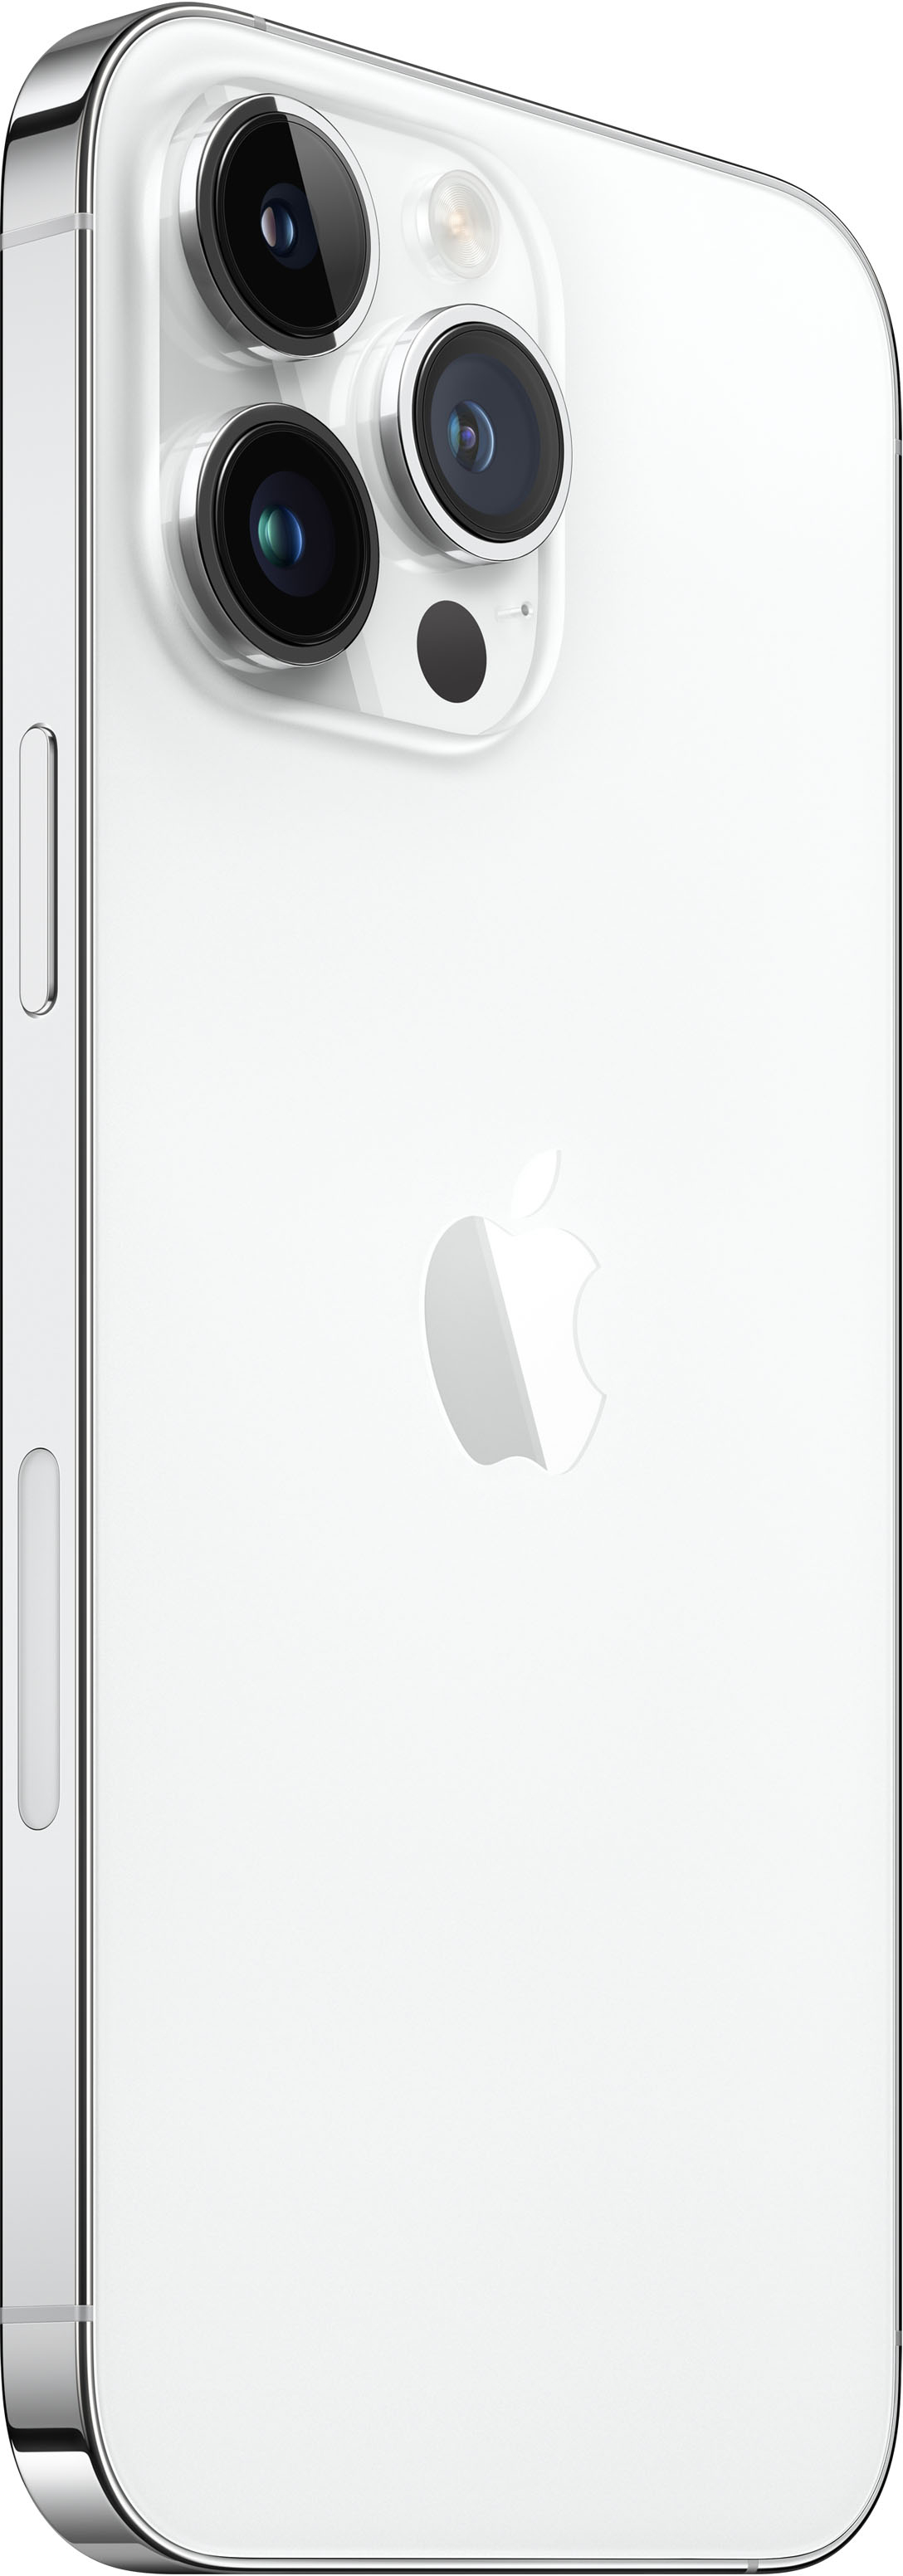 Apple iPhone 14 Pro Max 128GB Silver (Verizon) MQ8P3LL/A - Best Buy